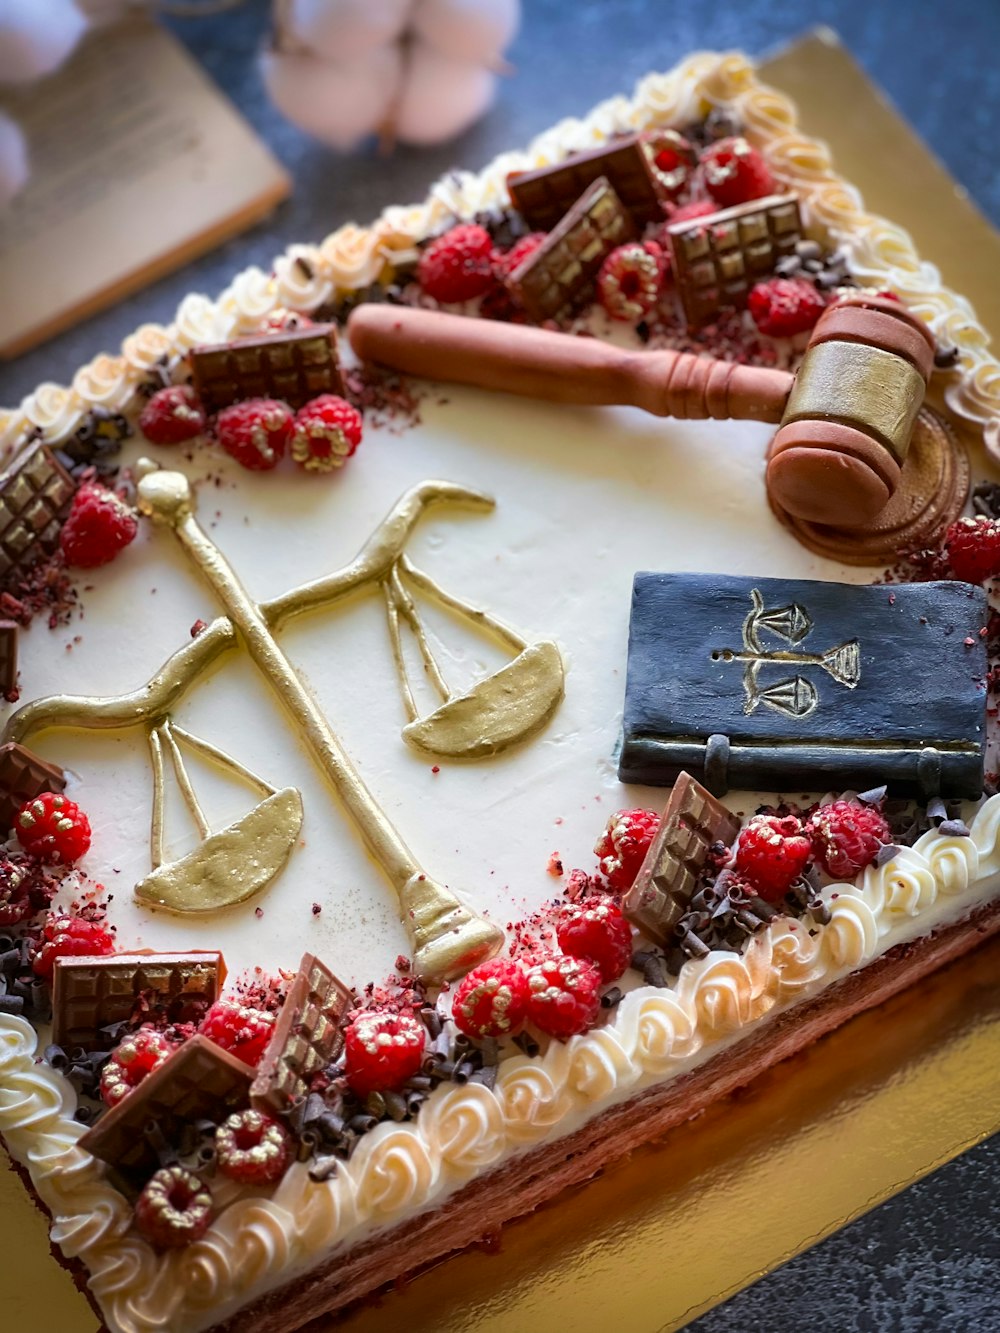 正義の秤と法律書で飾られたケーキ